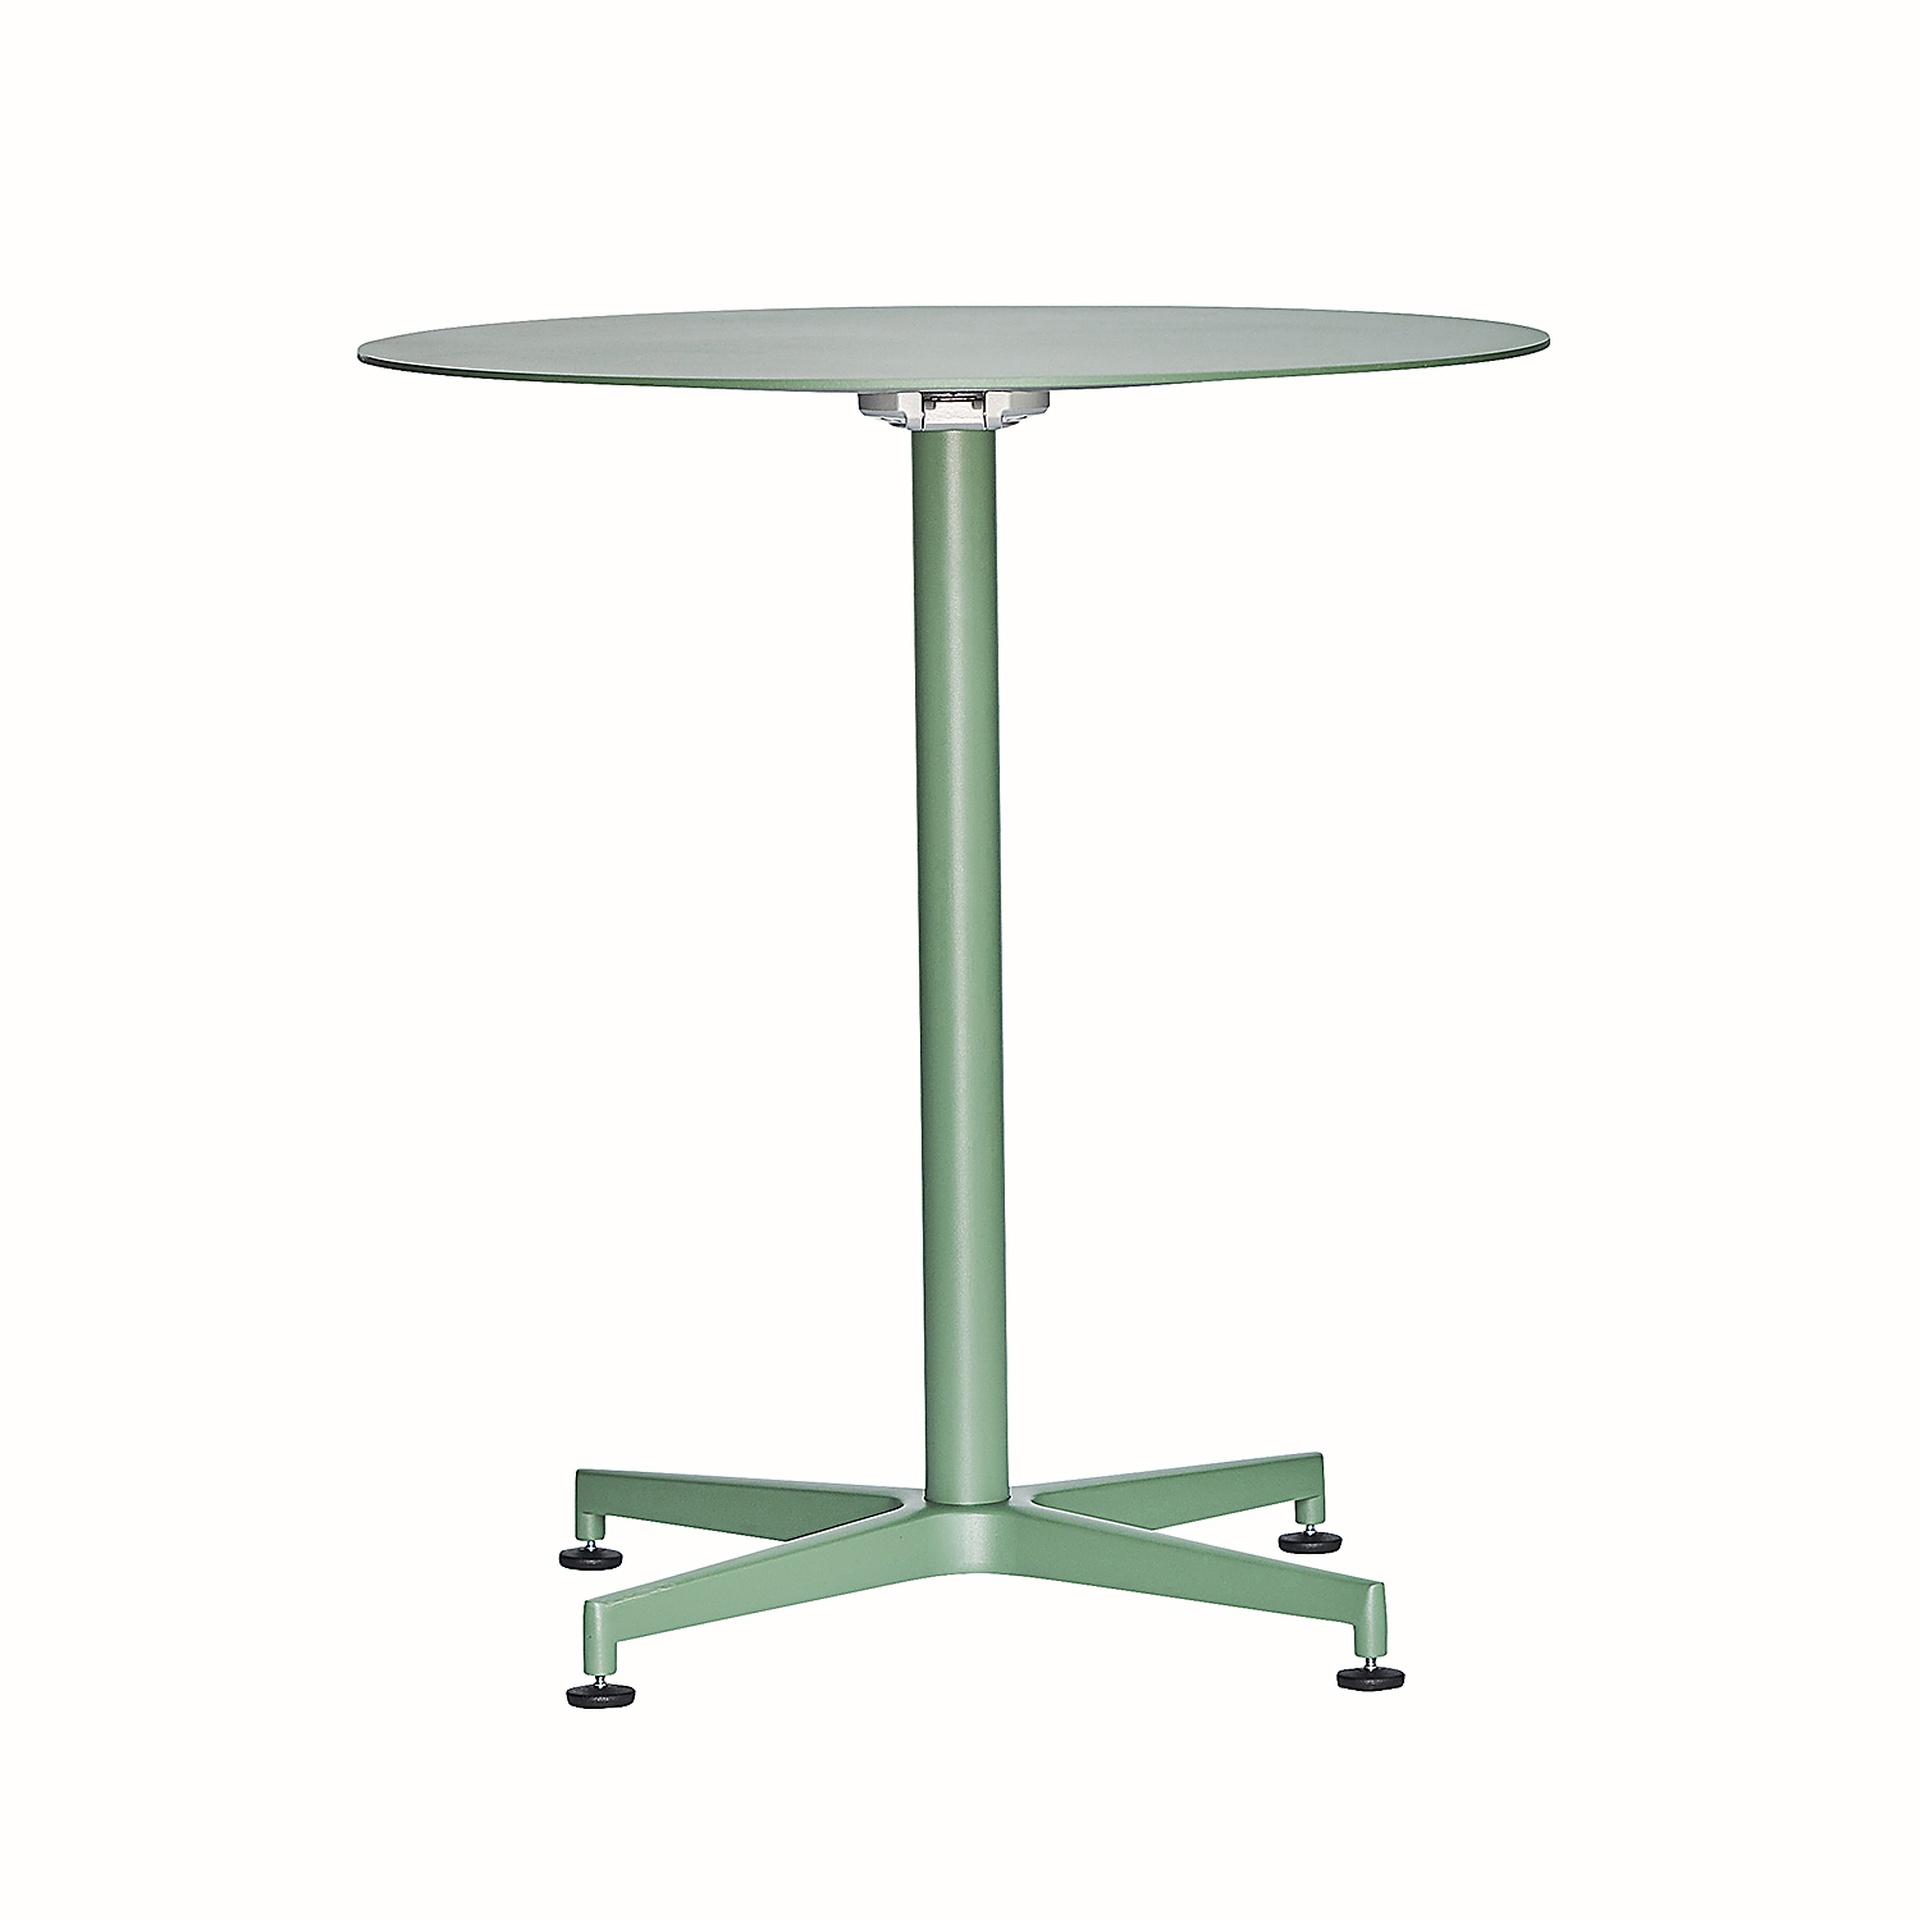 Der Klapptisch Vega in runder Form besitzt ein modernes Design. Hergestellt wurde der Tisch aus Aluminium und ist in verschieden Farben erhältlich. Der Tisch ist von der Marke Jan Kurtz.